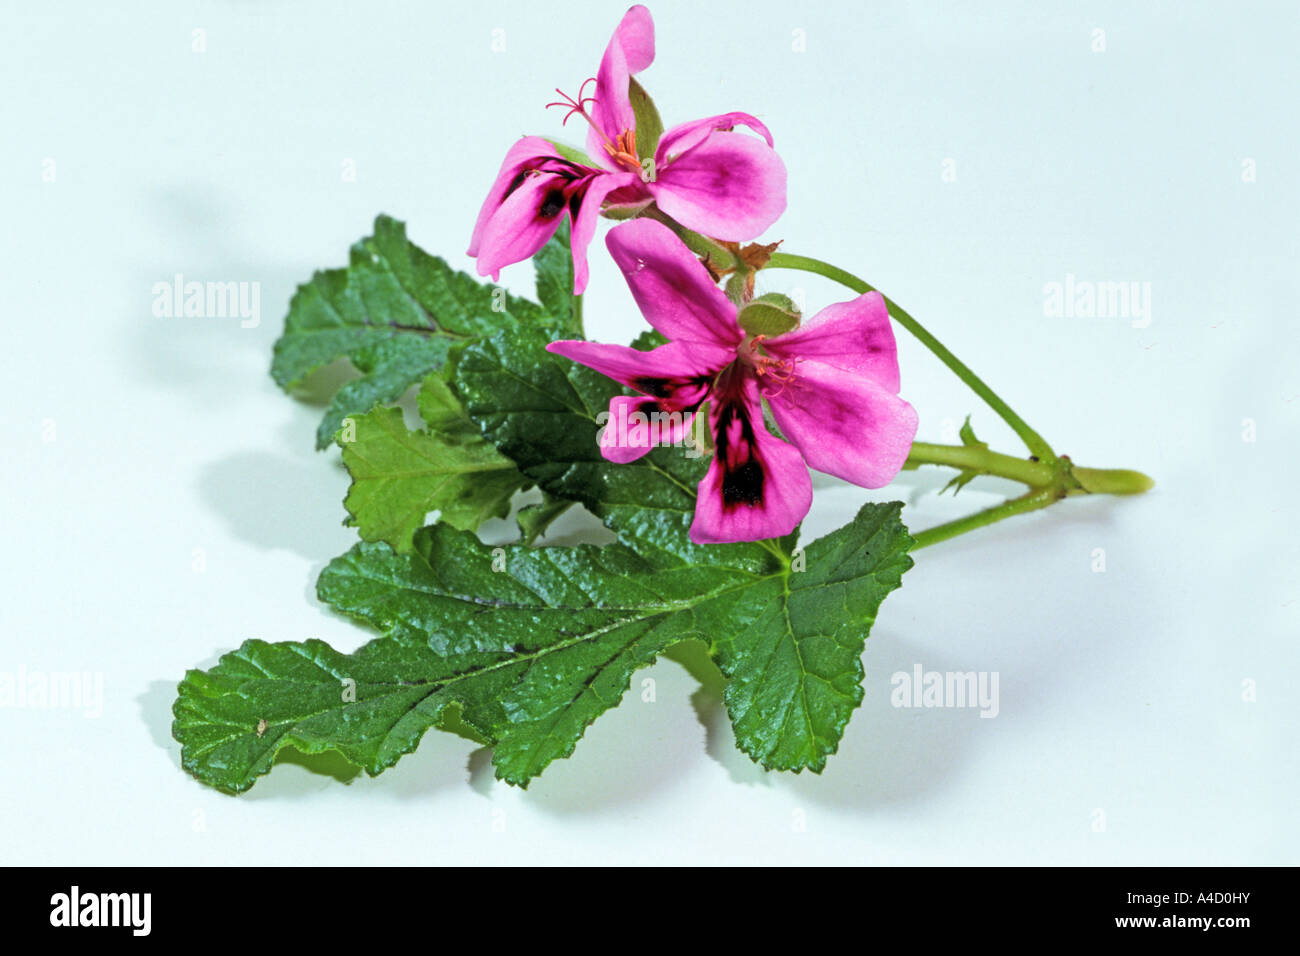 Umckaloabo (Pelargonium reniforme, Pelargonium sinoides), flowers, studio picture Stock Photo